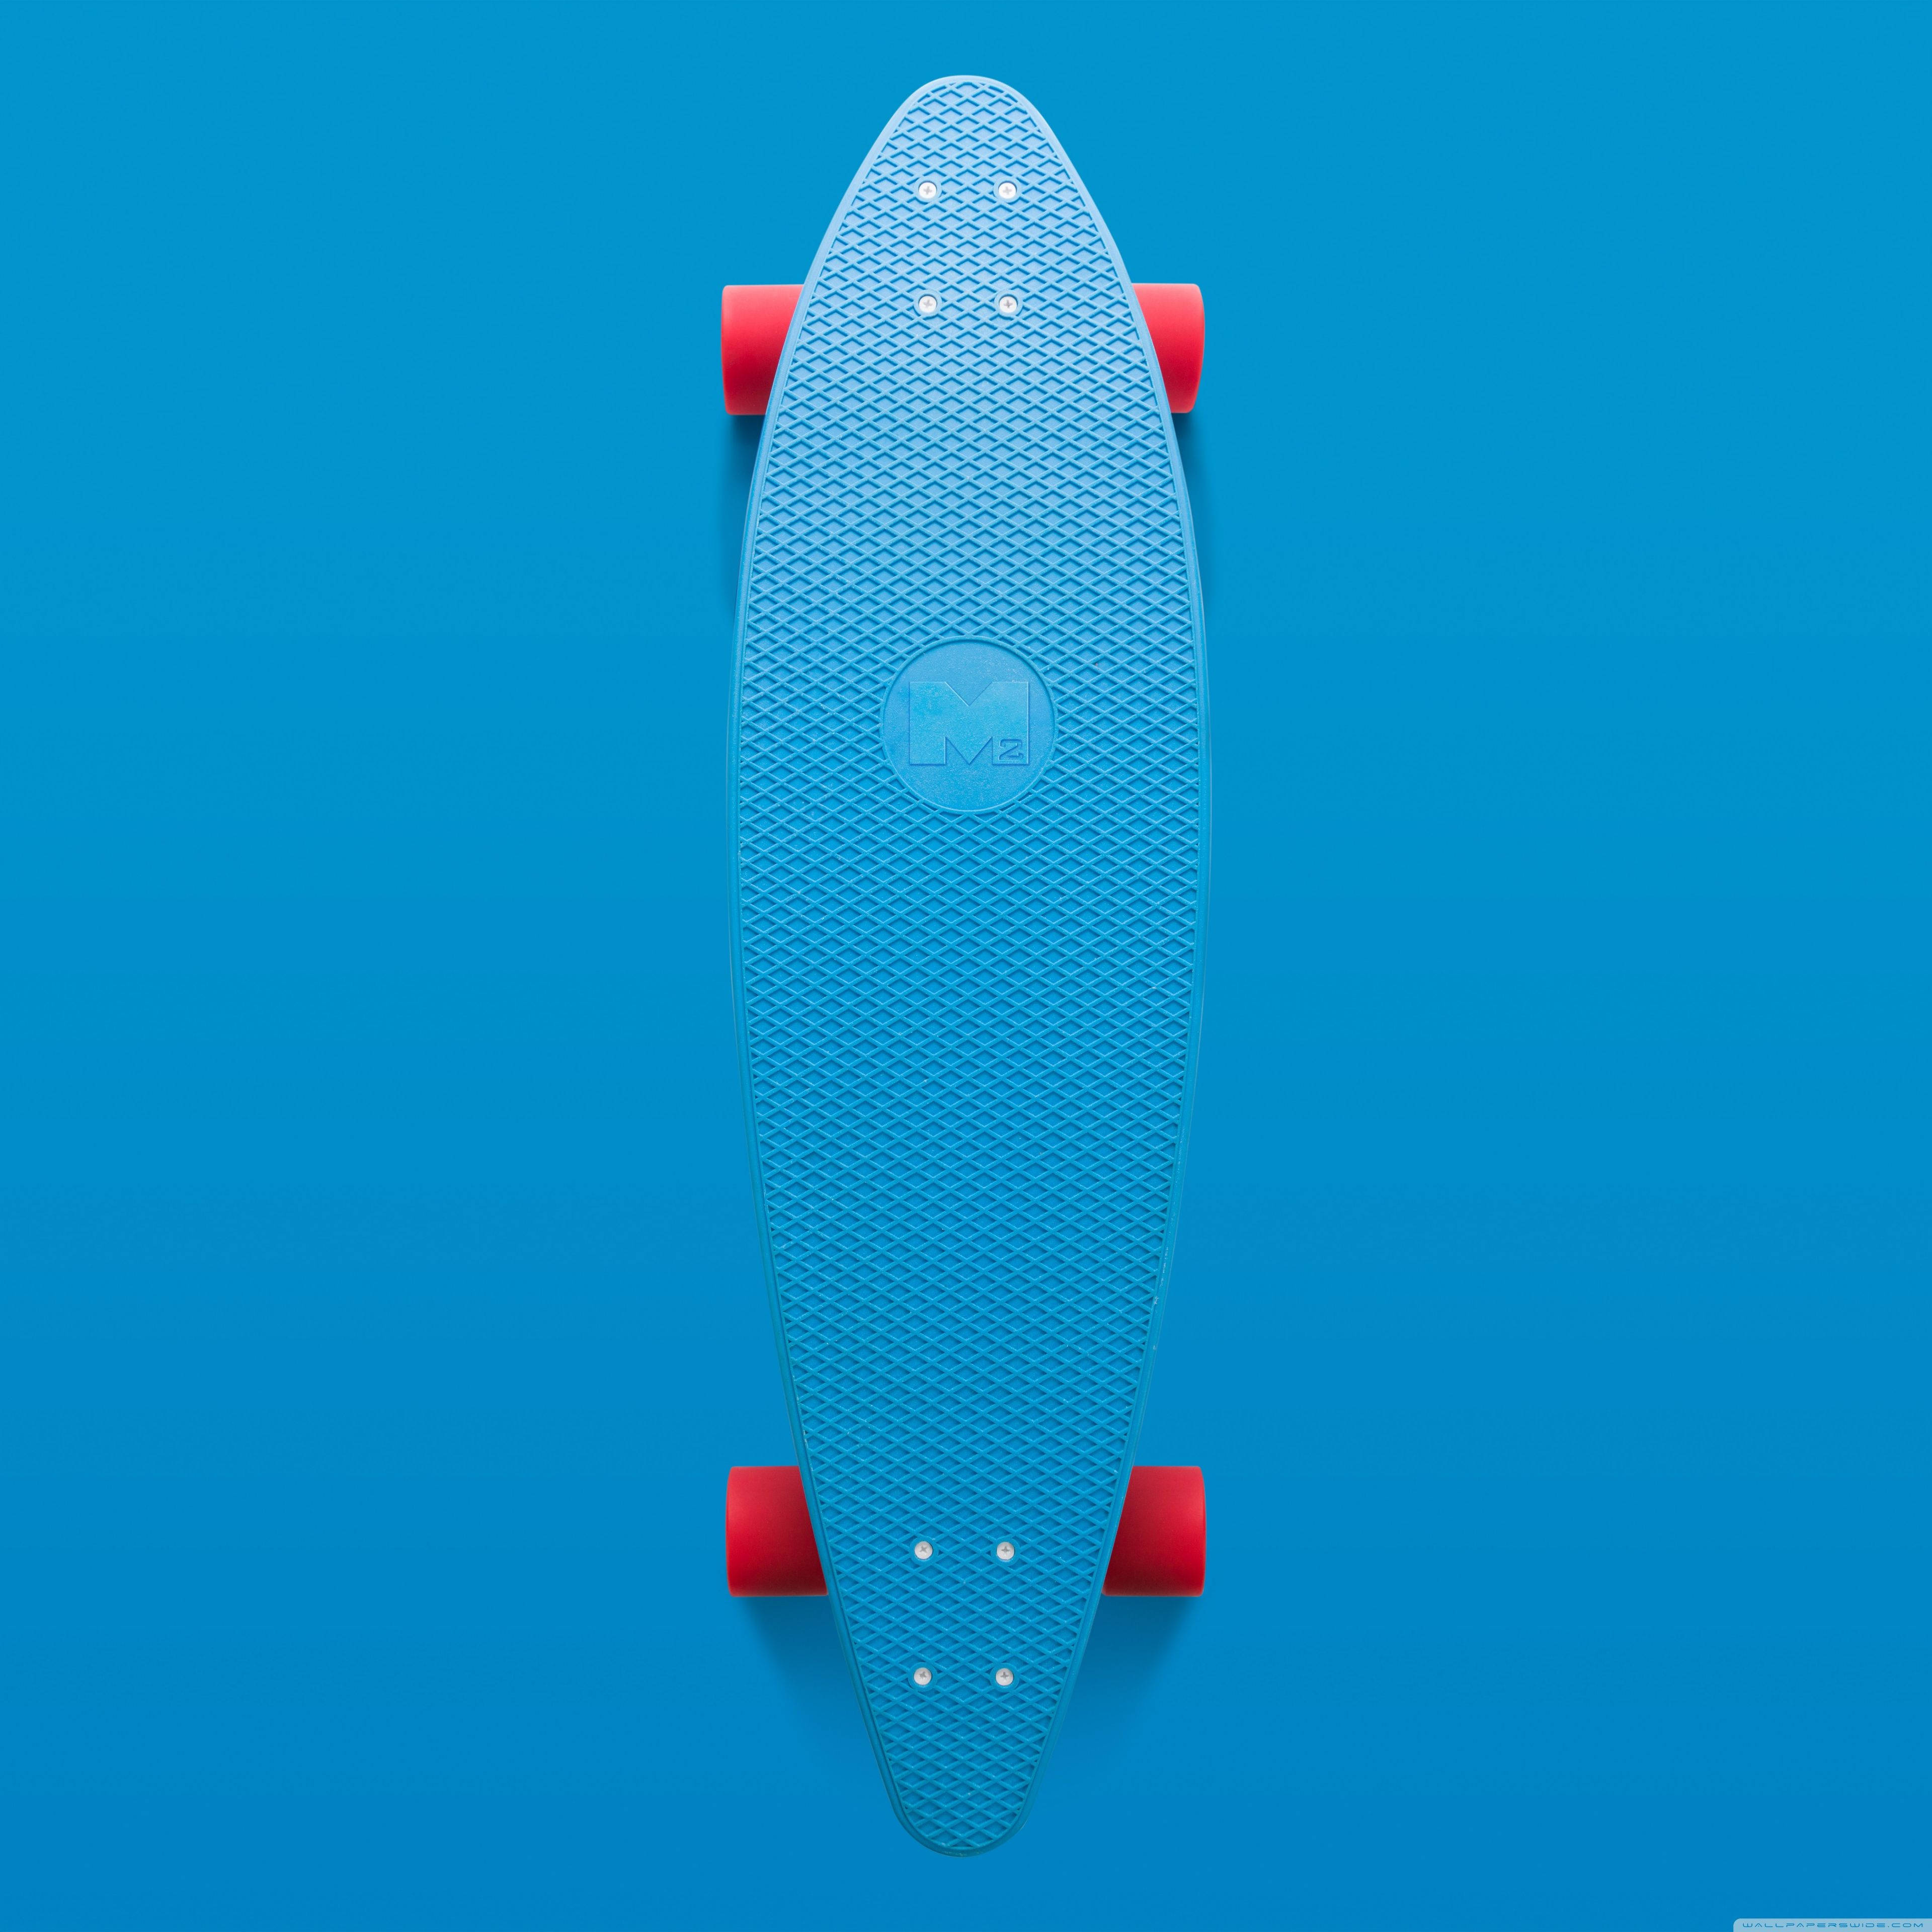 Blue Aesthetic Skateboard Background